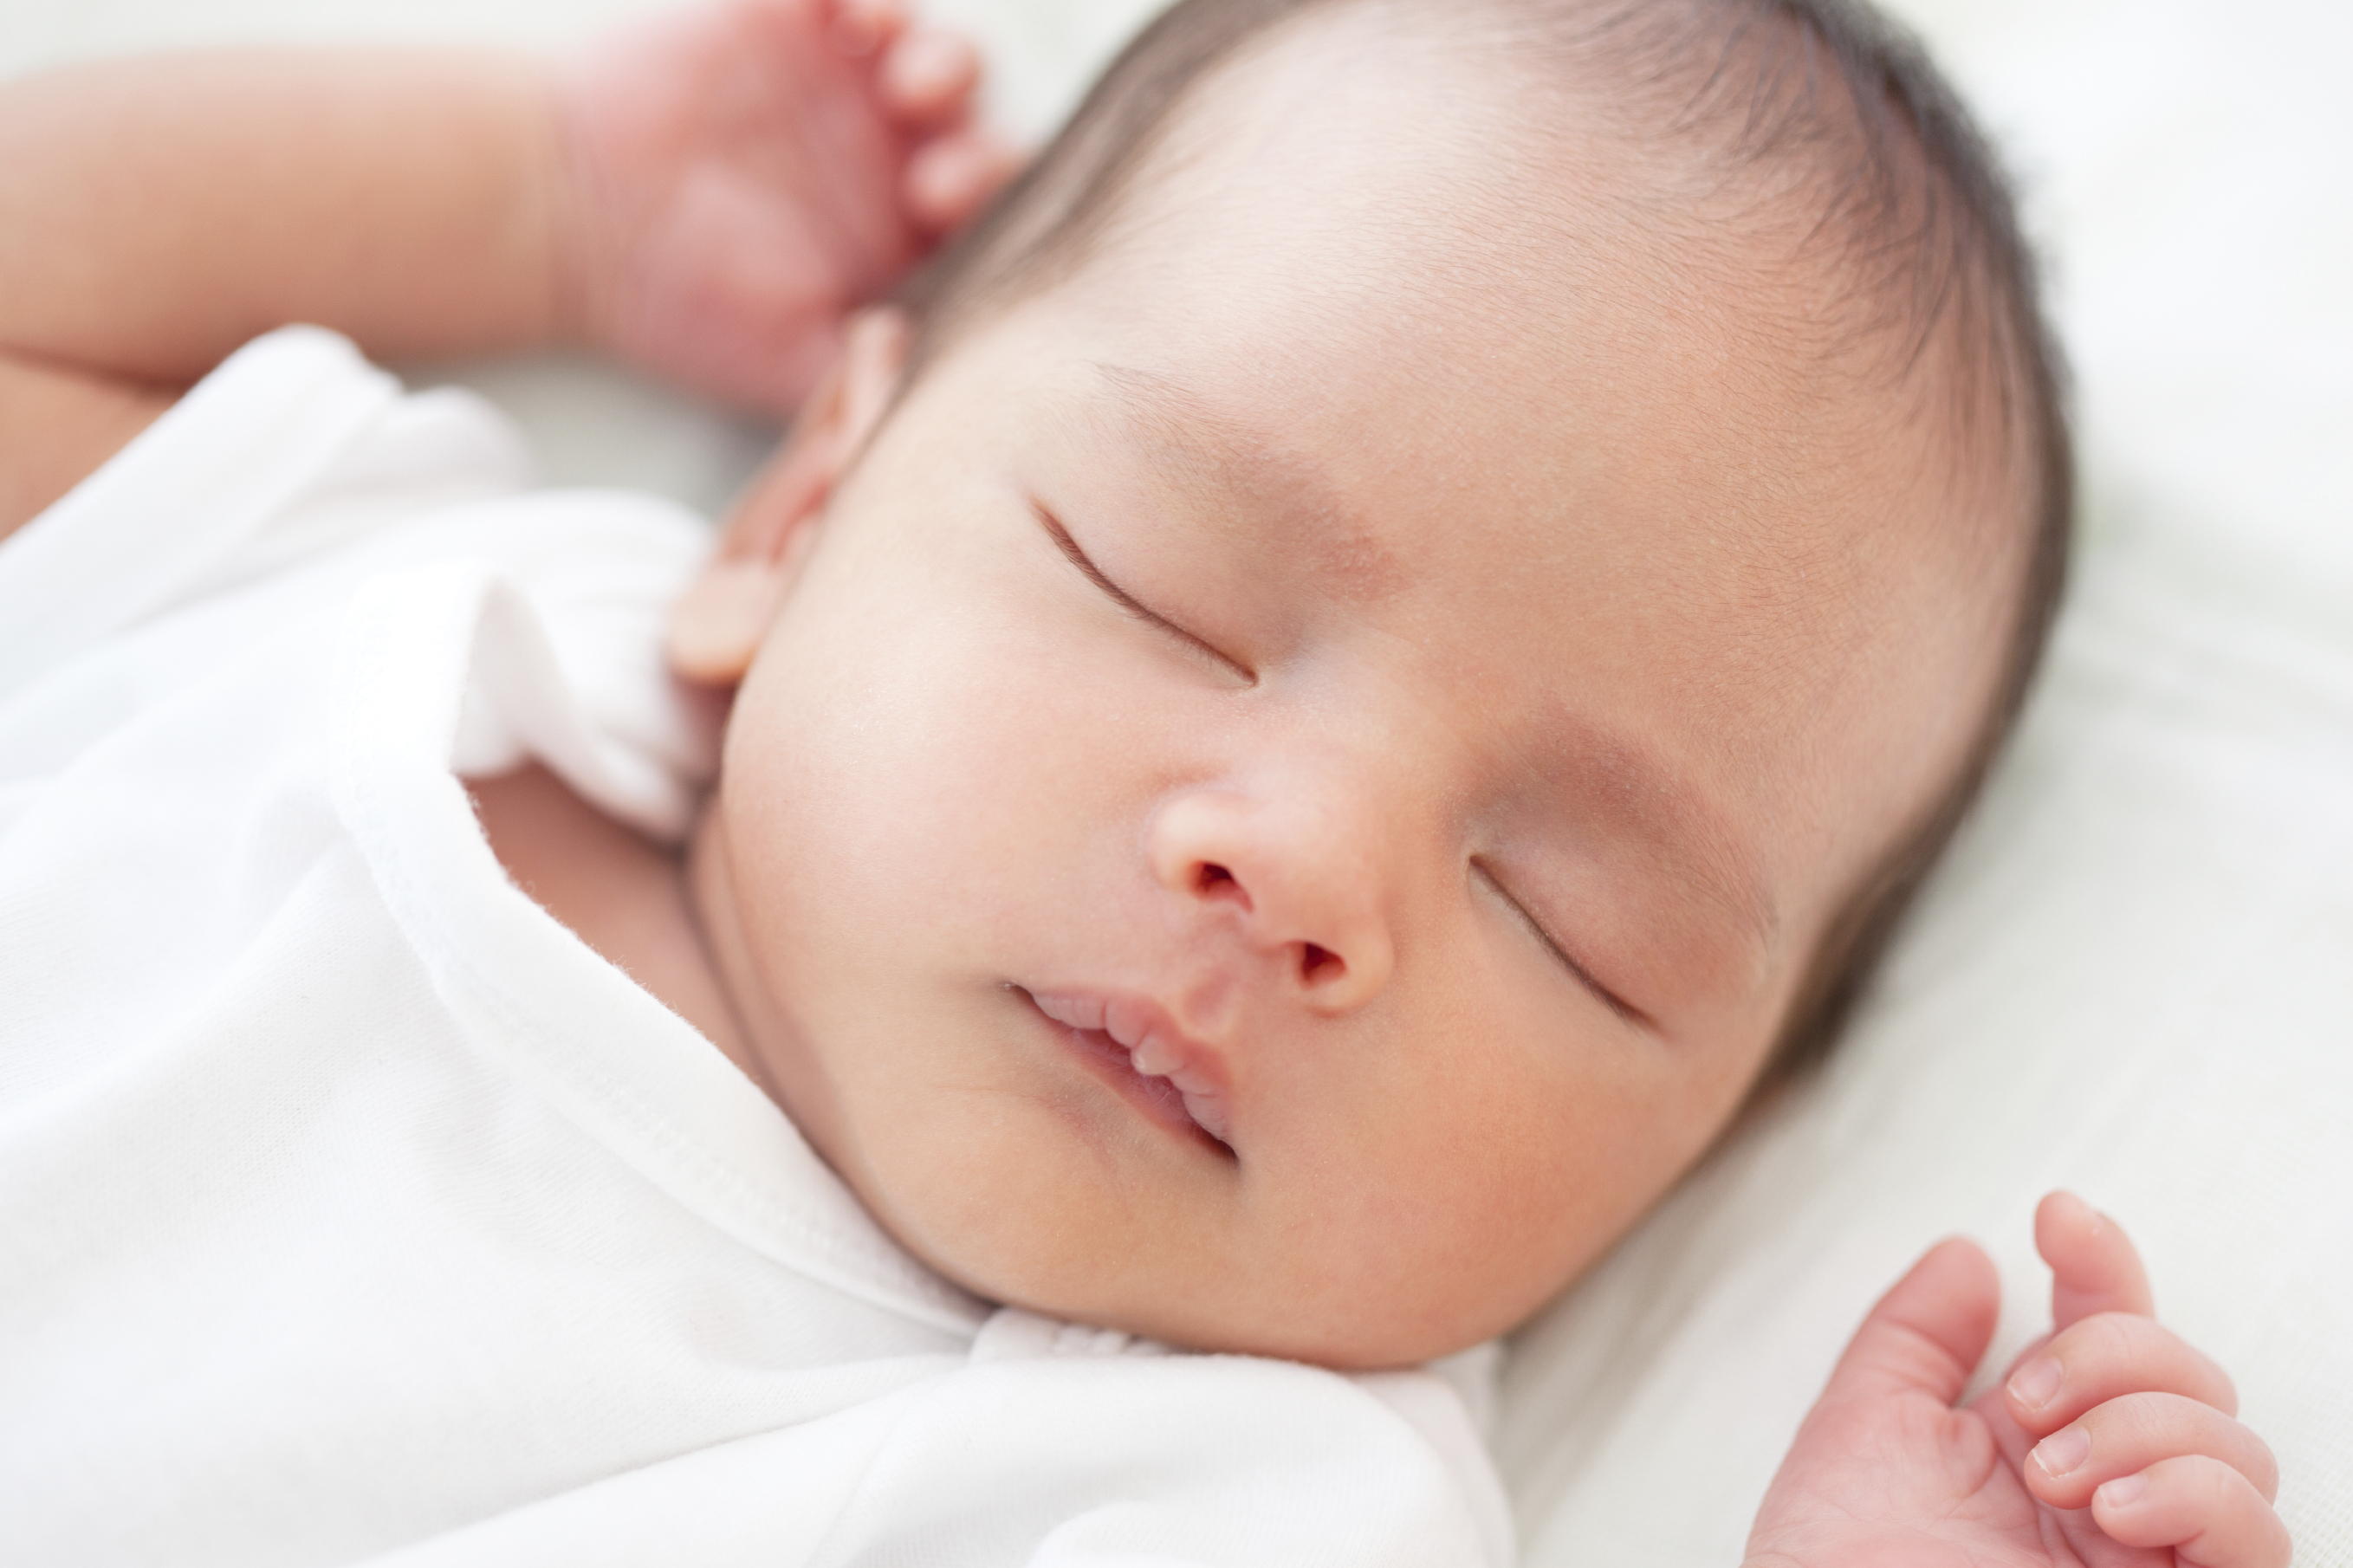 Kulit Bayi Kering Dan Bersisik Penyebab Dan Perawatannya